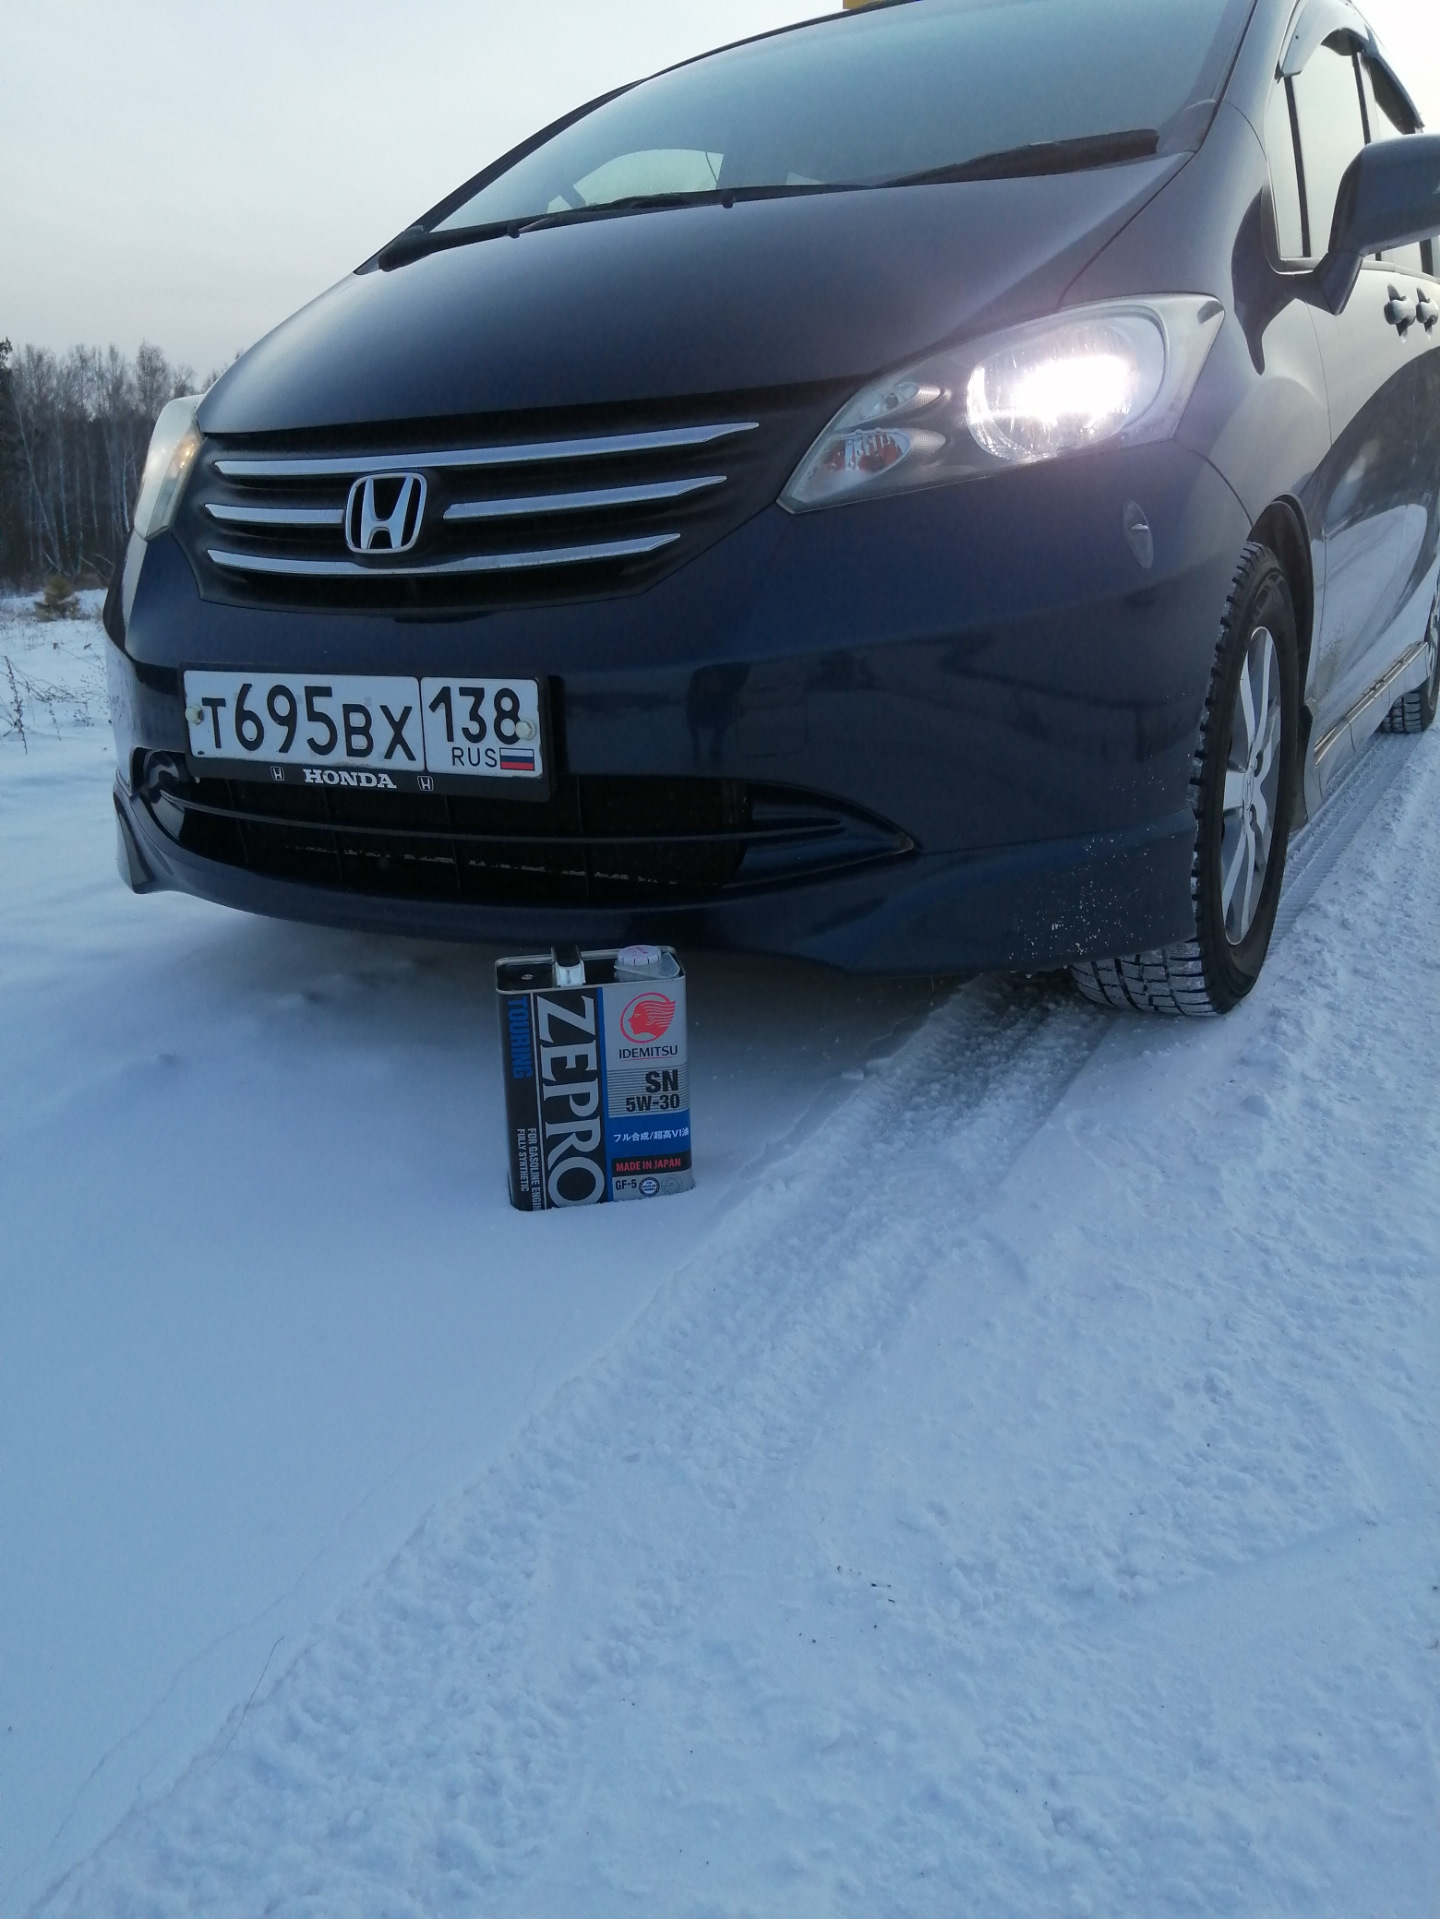 Хонда Фрид 2011 черный. Volkswagen Caddy 2012 бордовый. Хонда Фрид 2009 фото в Красноярске. Хонда freed черная зимой. Масло хонда фрид гибрид